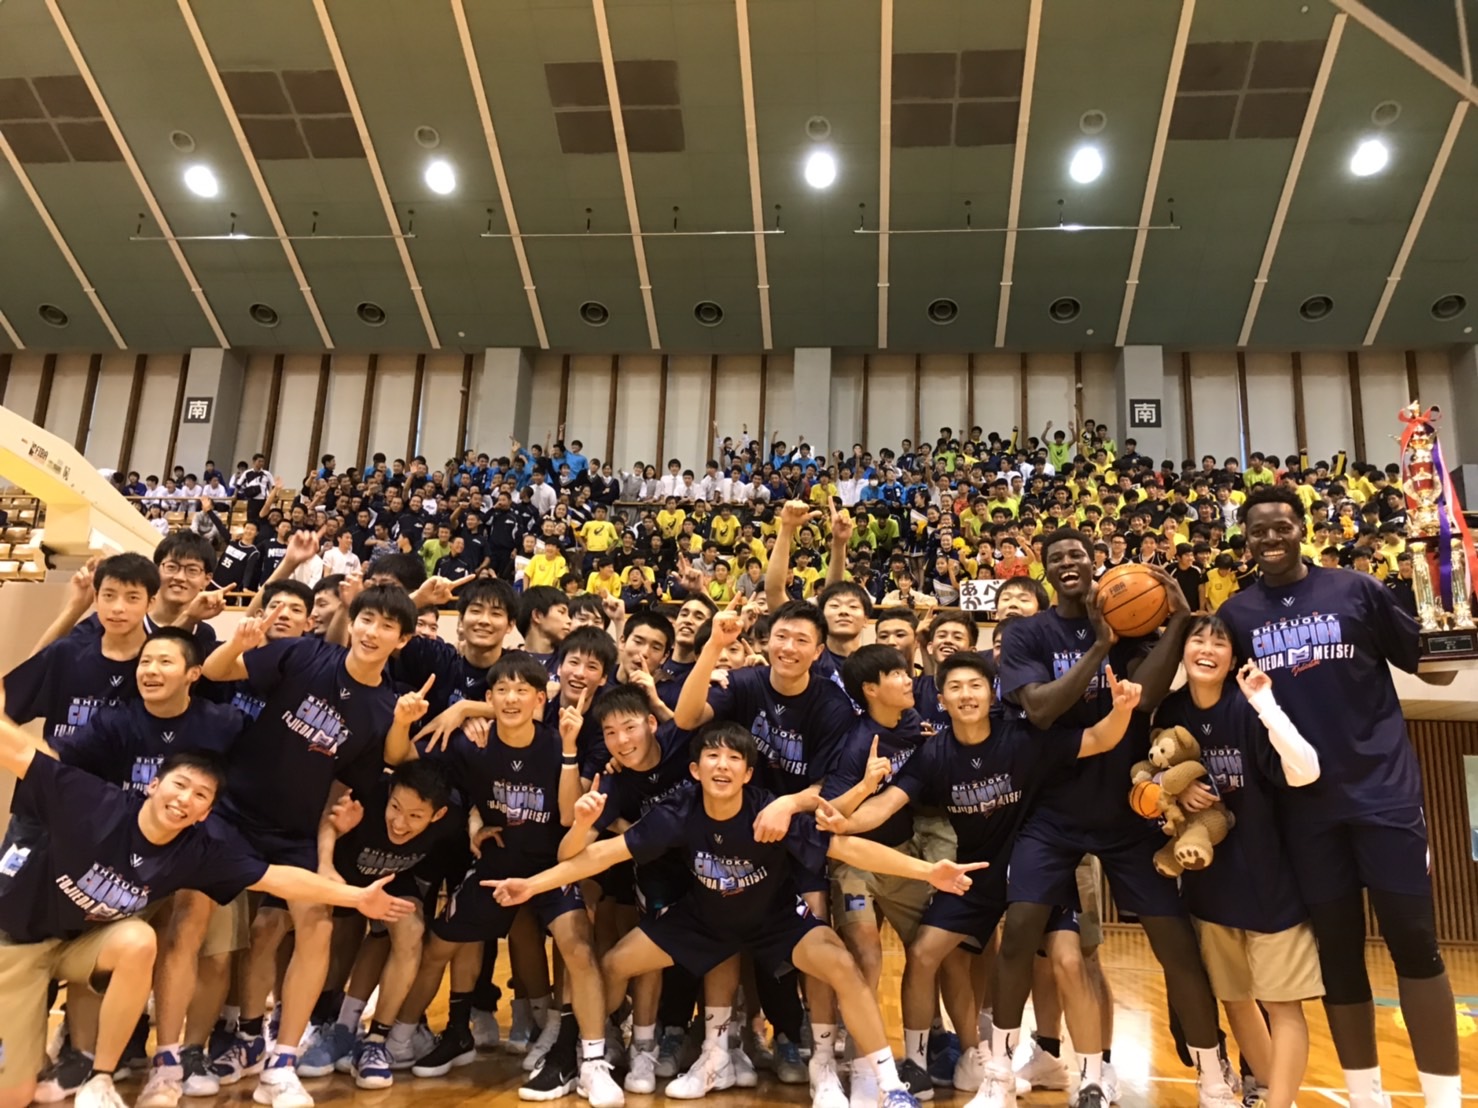 ウィンターカップ静岡県予選を制した藤枝明誠高校バスケットボール部集合写真